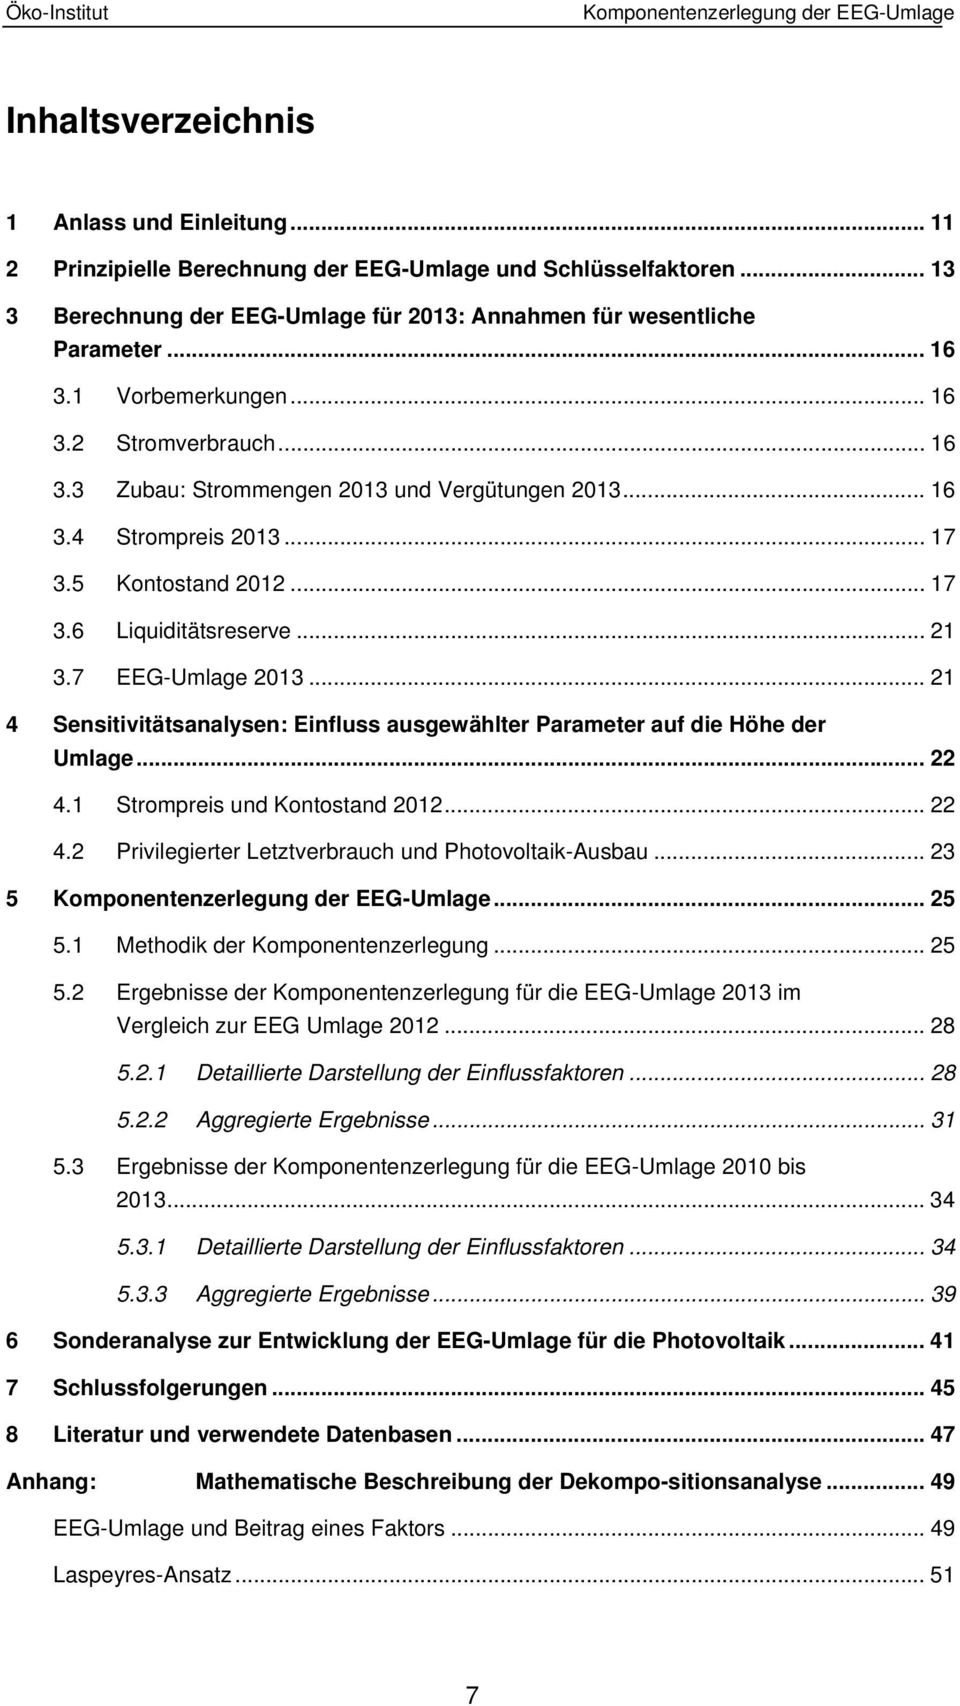 .. 17 3.5 Kontostand 2012... 17 3.6 Liquiditätsreserve... 21 3.7 EEG-Umlage 2013... 21 4 Sensitivitätsanalysen: Einfluss ausgewählter Parameter auf die Höhe der Umlage... 22 4.